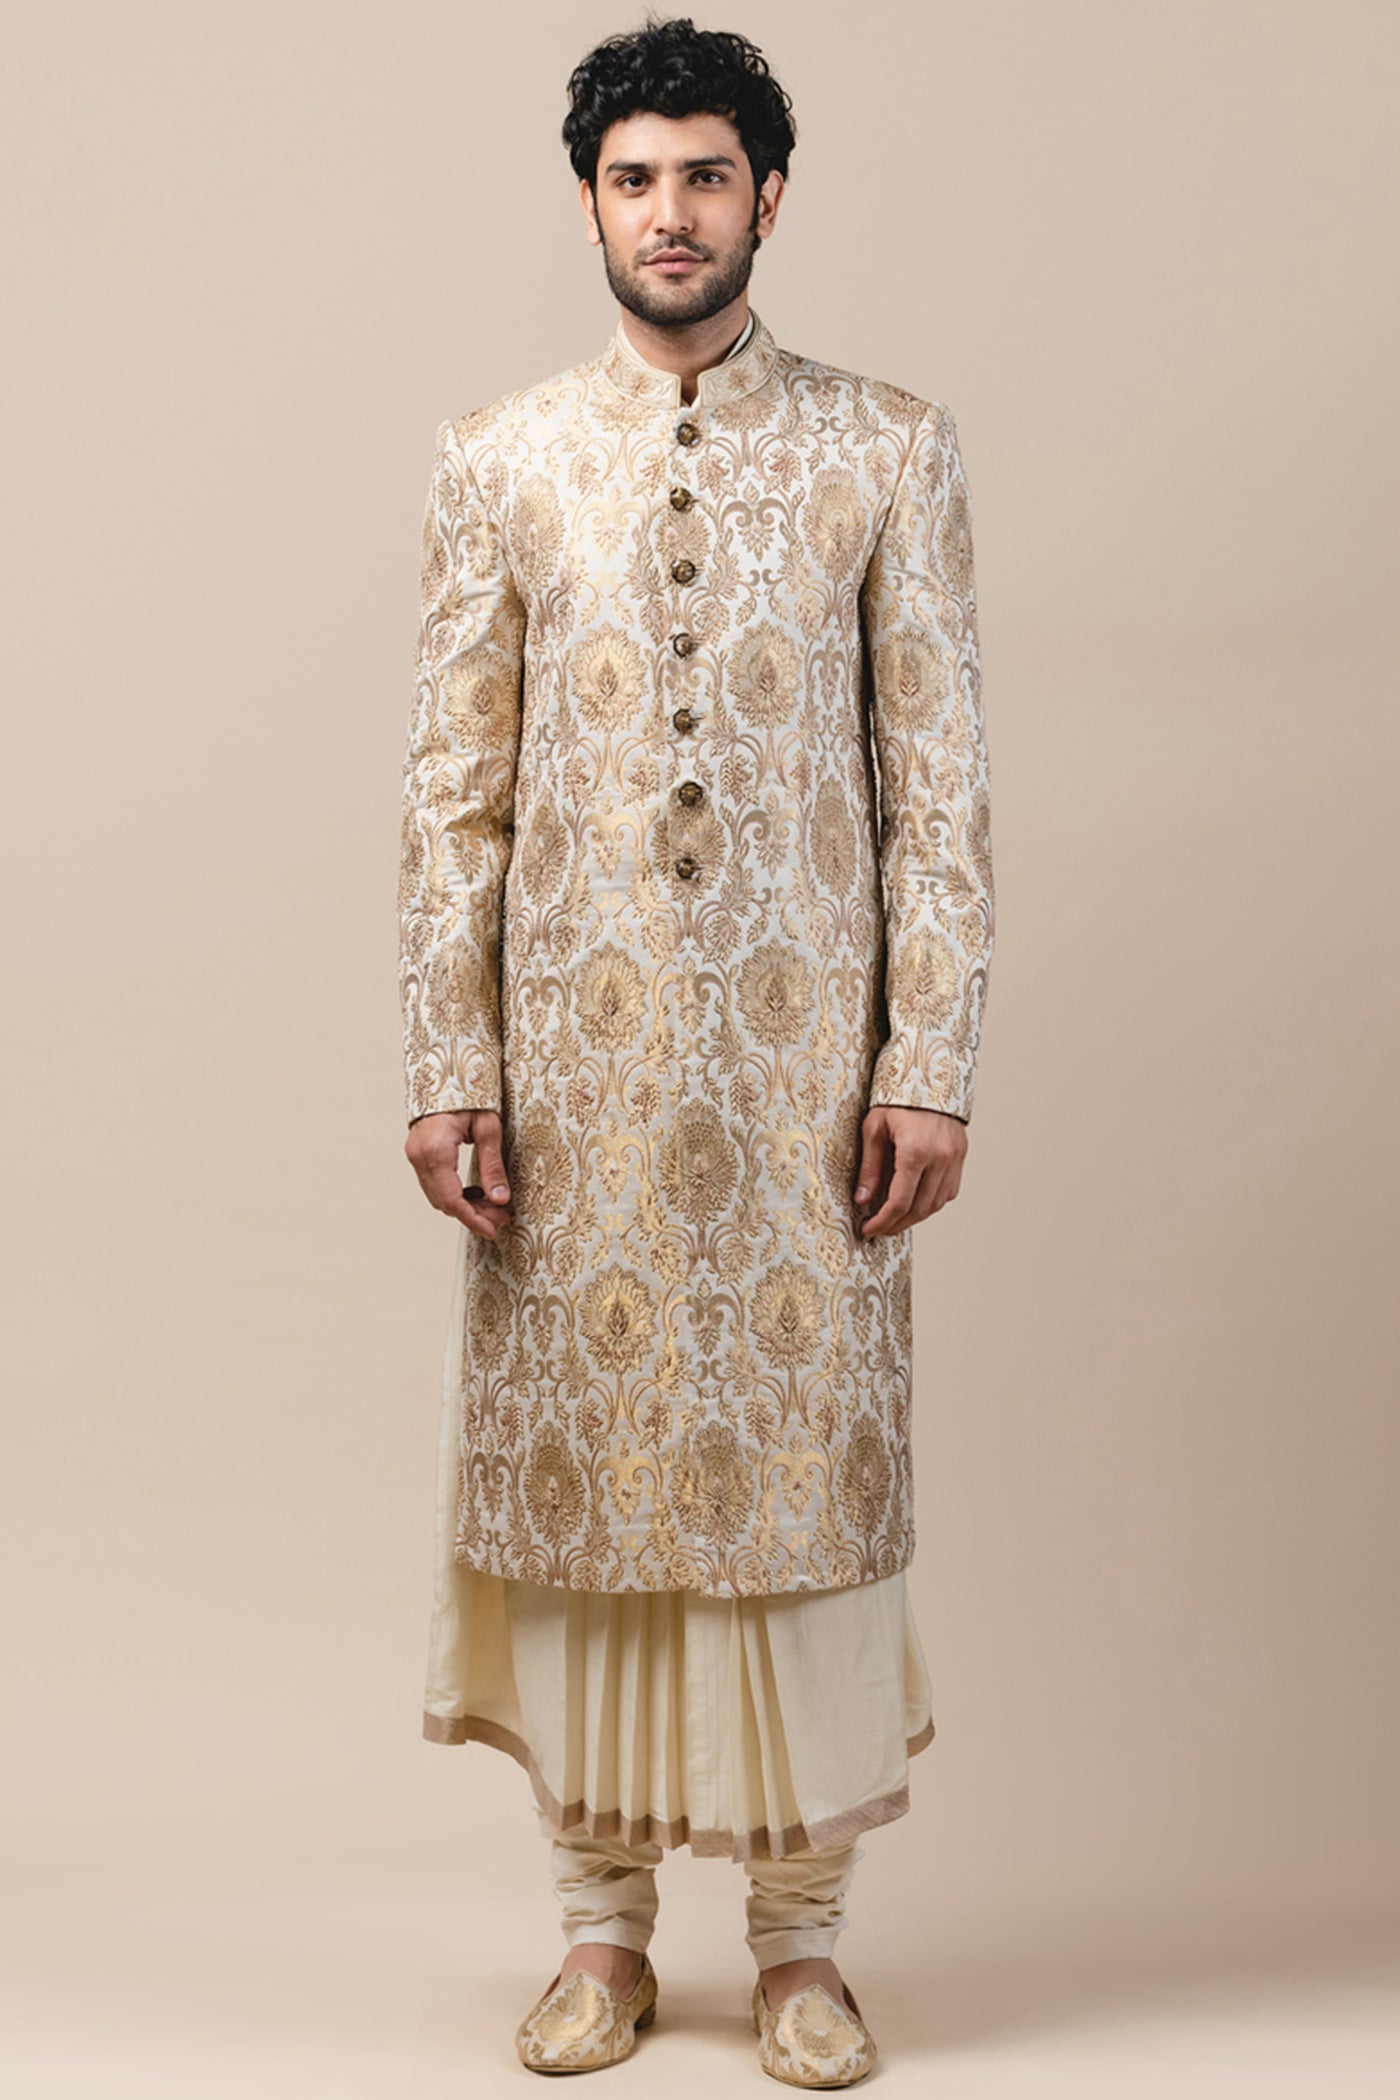 Tarun Tahiliani menswear Brocade Sherwani gold ivory white wedding groom bridal indian designer wear online shopping melange singapore